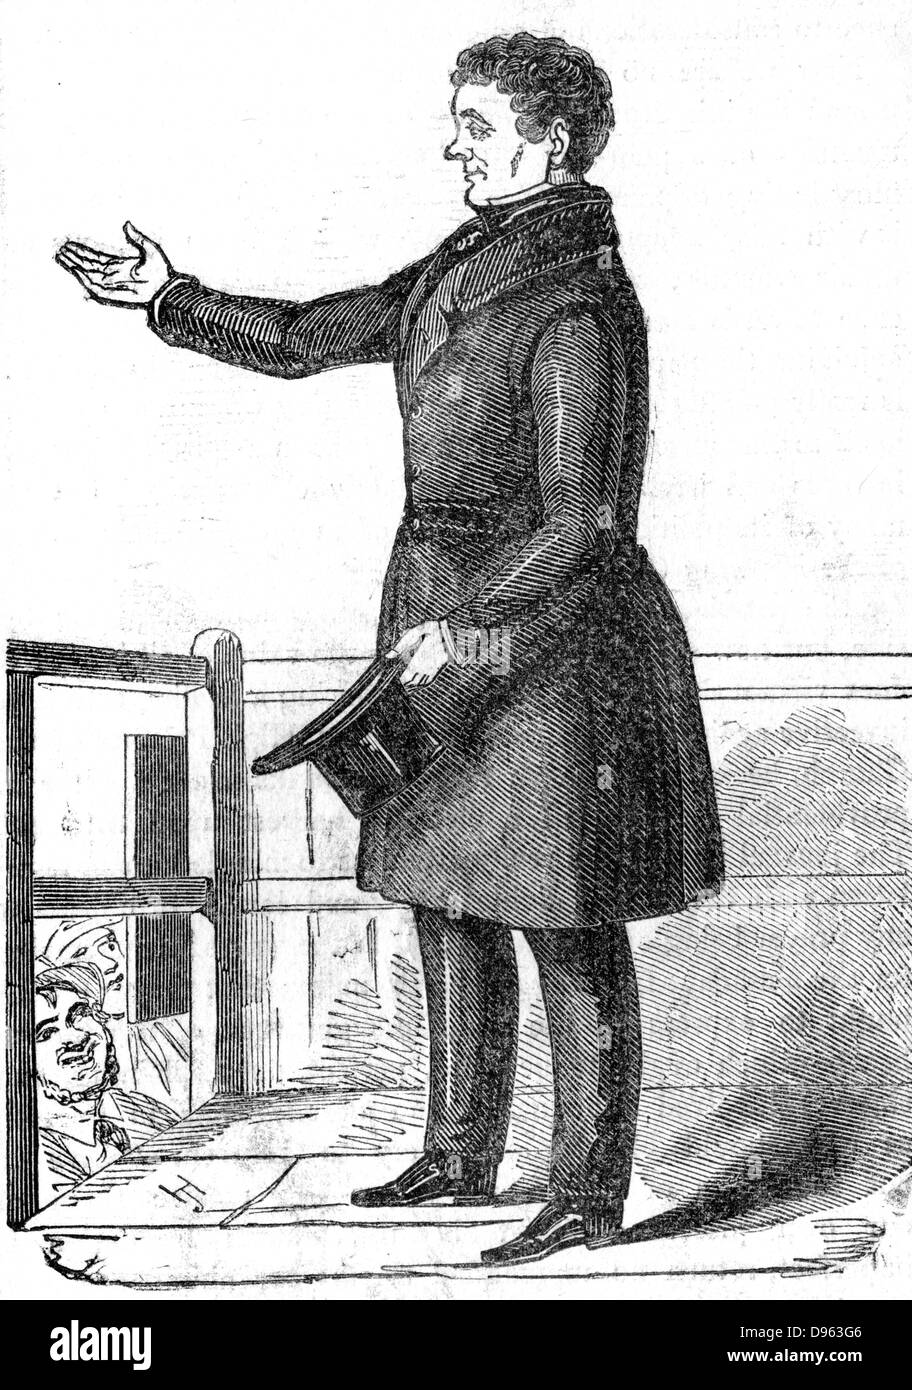 Daniel O'Connell (1775-1847) "der Befreier", die Anerkennung der Jubel der Menge. Irish Patriot und politische Führer, die für das Katholische Emanzipation, die durch das britische Parlament im Jahr 1829 gewährt wurde, gearbeitet und für eine Aufhebung (der Union mit Großbritannien) movemement. Von der "Illustrated London News", 1842. Stockfoto